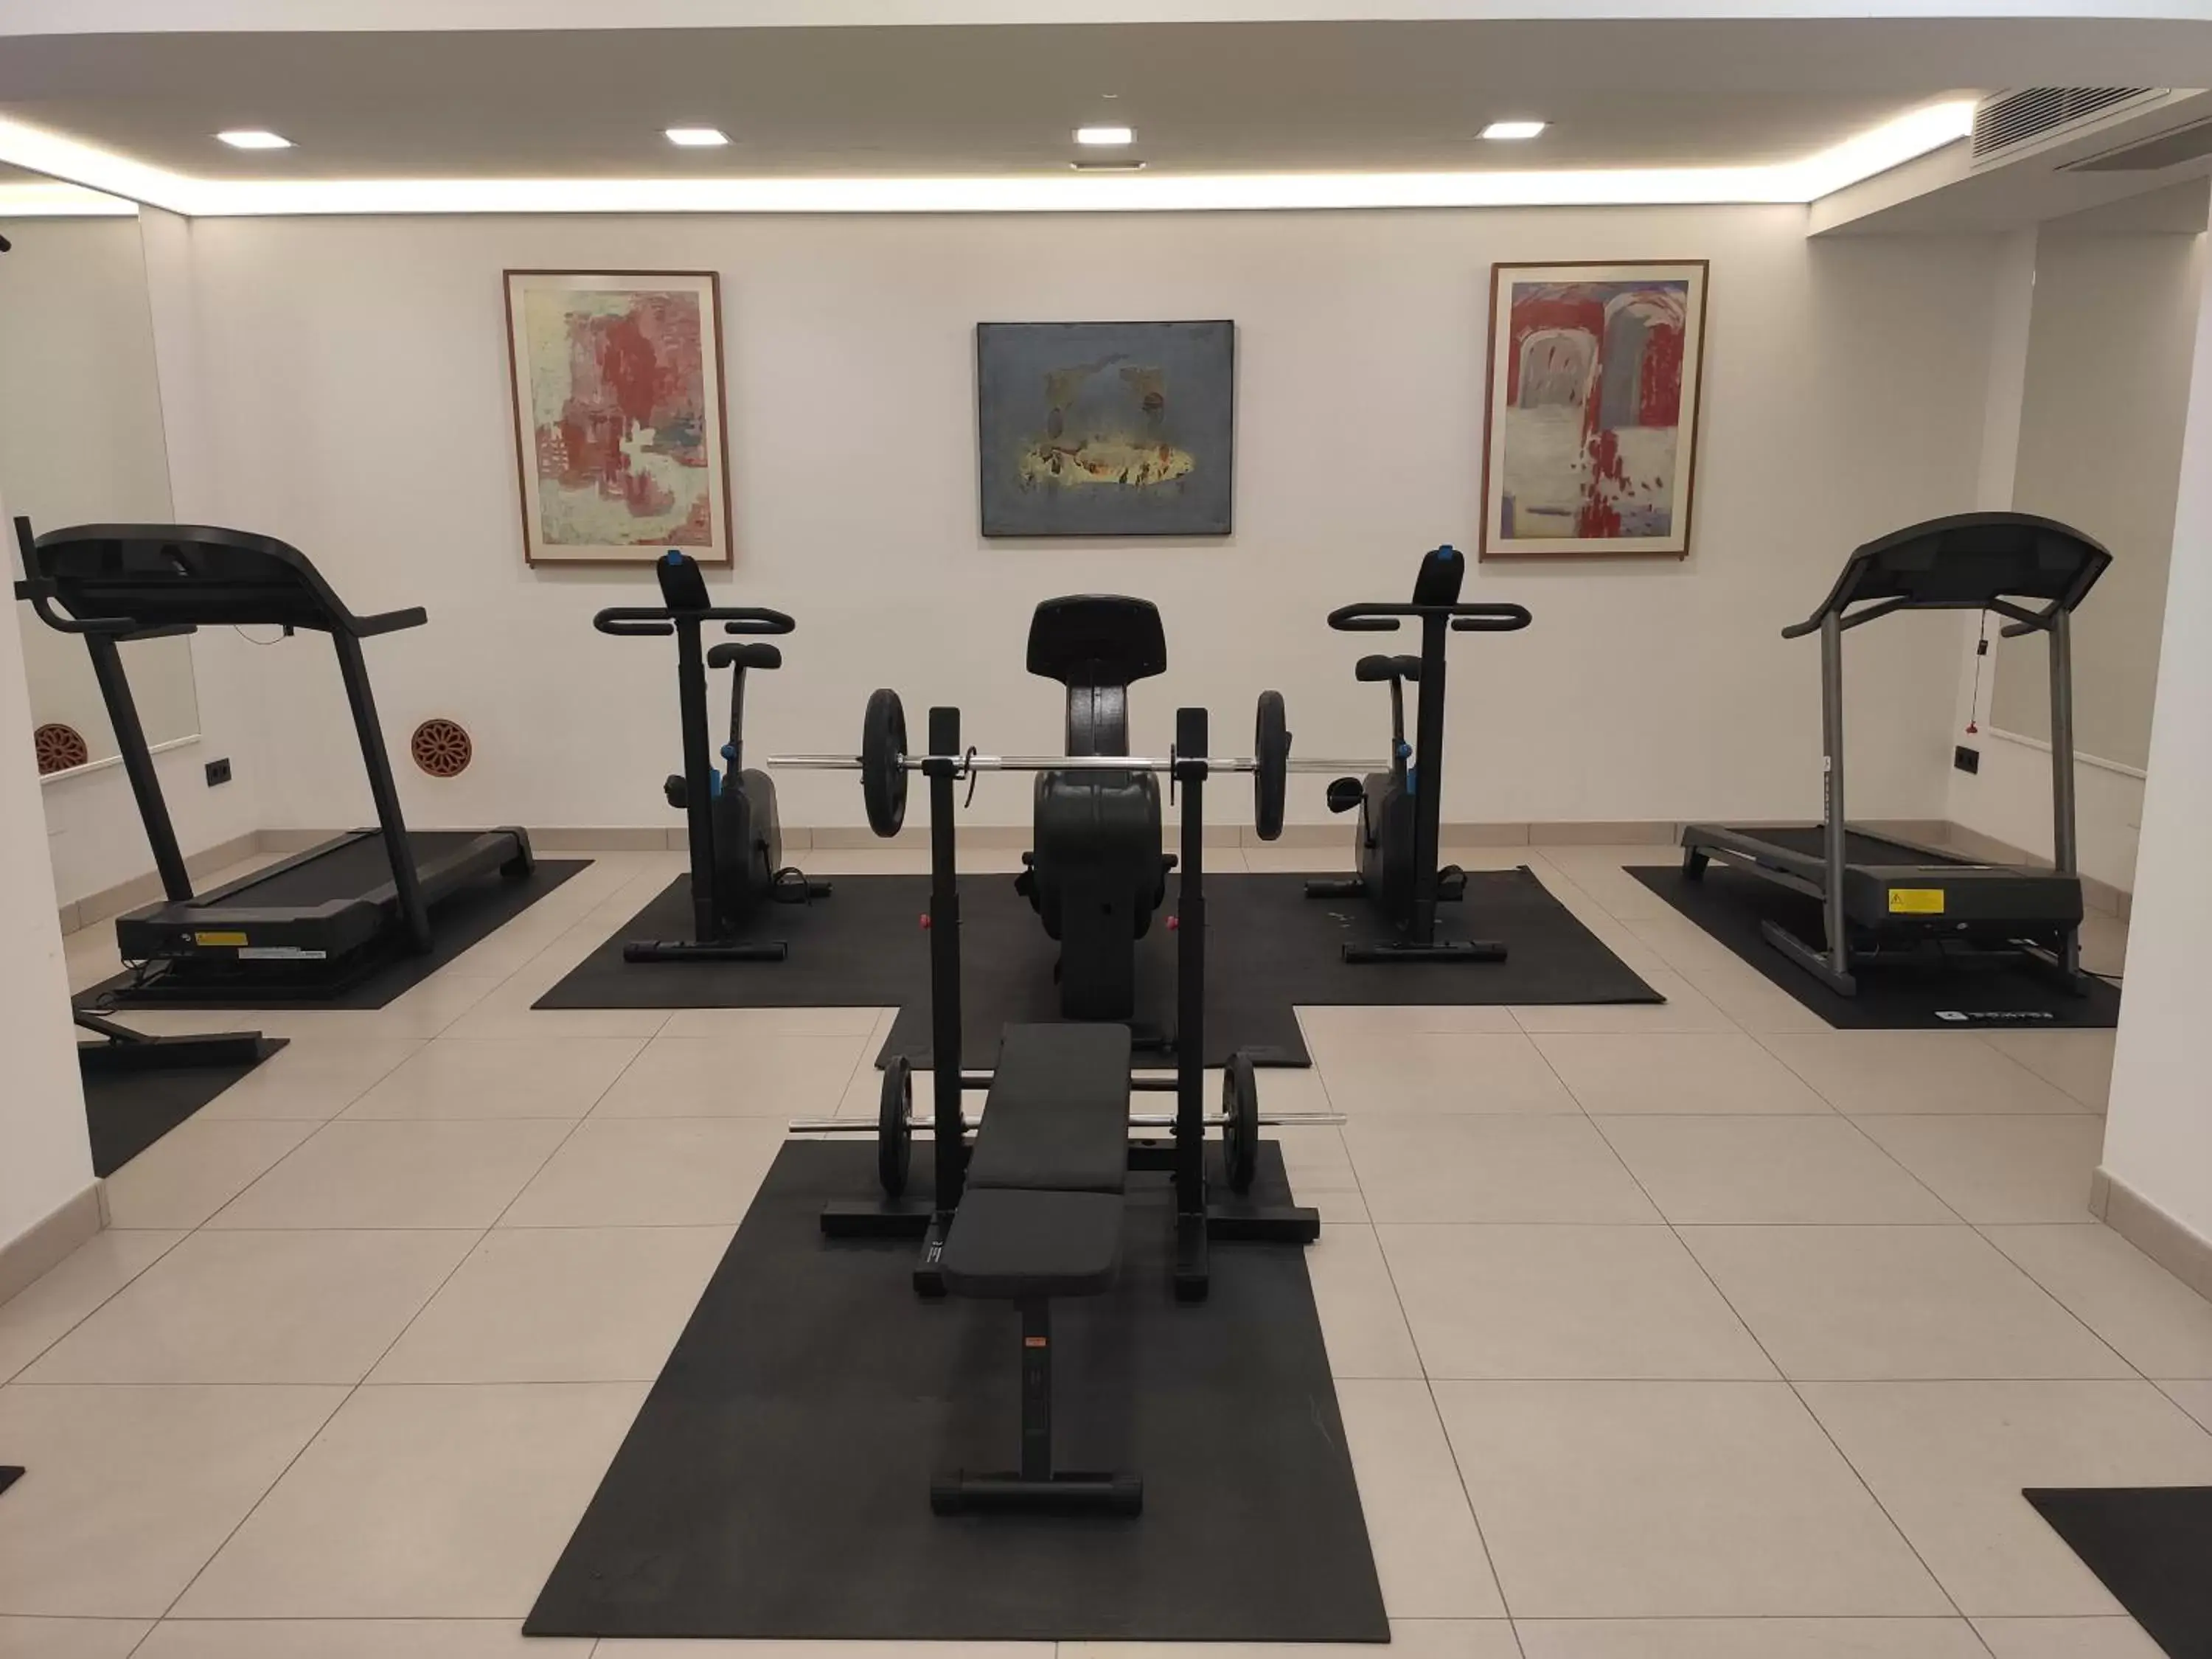 Fitness centre/facilities, Fitness Center/Facilities in Hotel Mirador